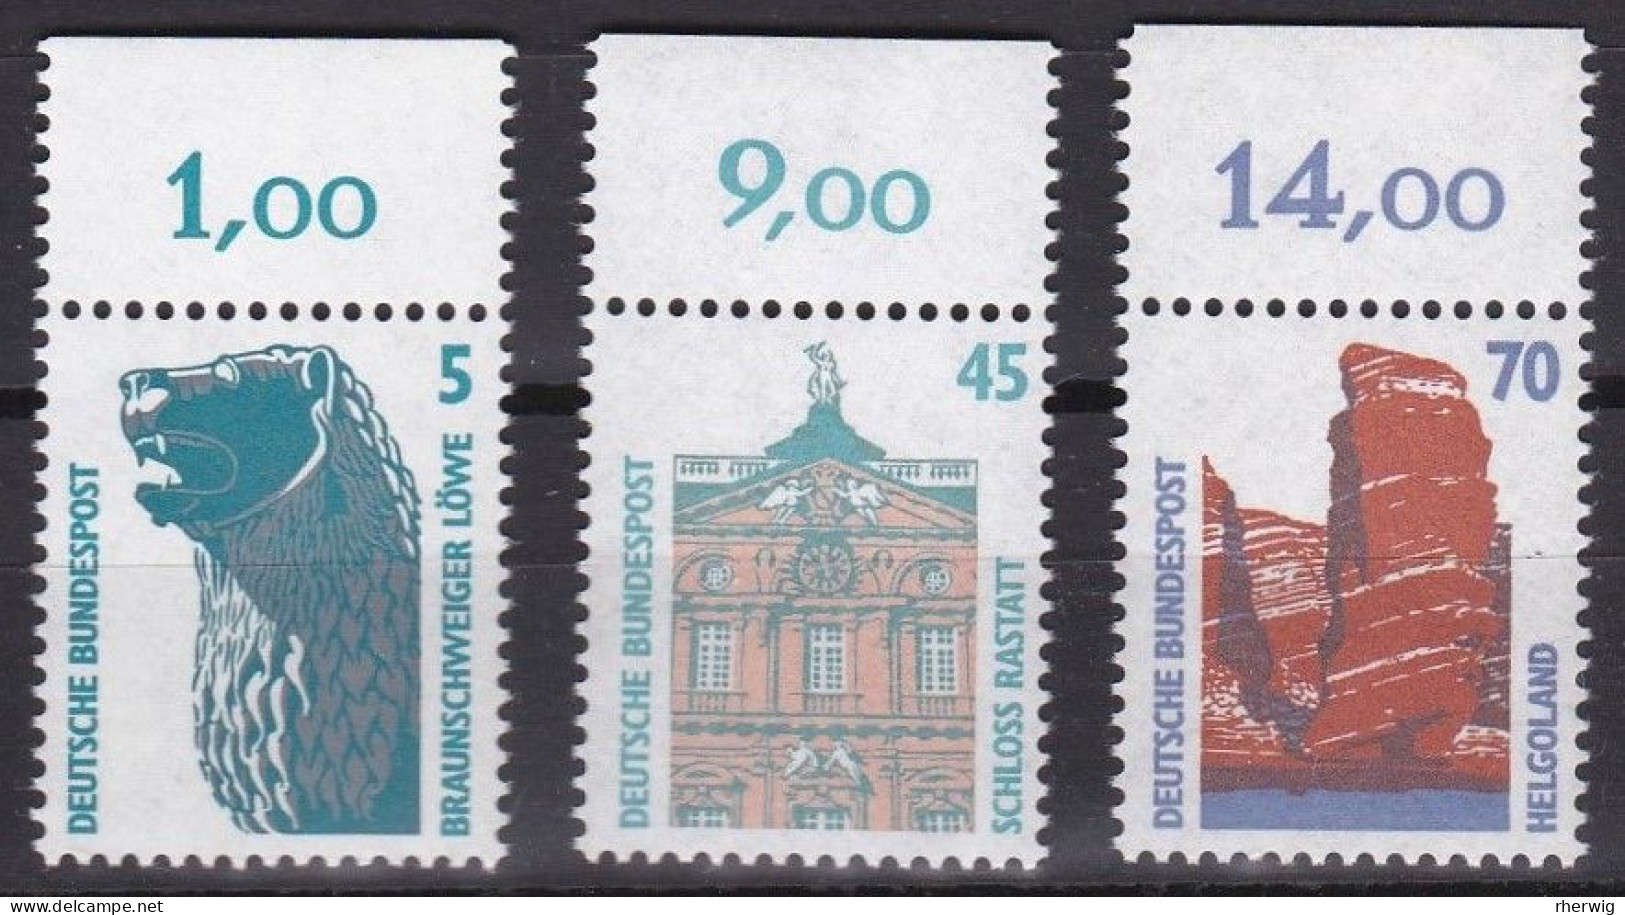 BRD, 1990, Nr. 1448, 1468-1469 ** Sehenswürdigkeiten (VII, VIII), 3 Marken Mit Oberrand - Unused Stamps